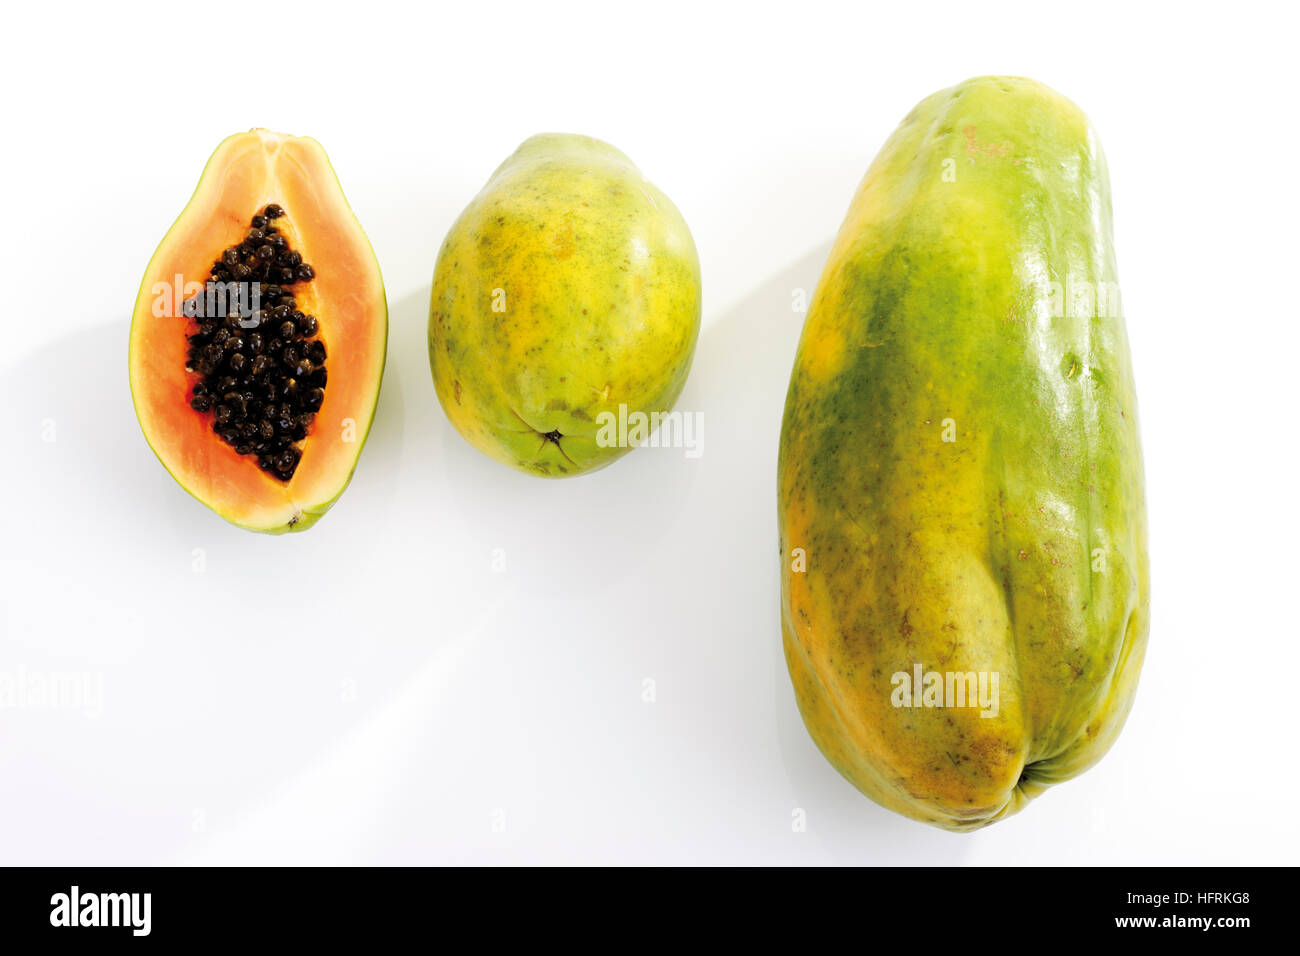 Papaya varieties (Carica papaya) Stock Photo